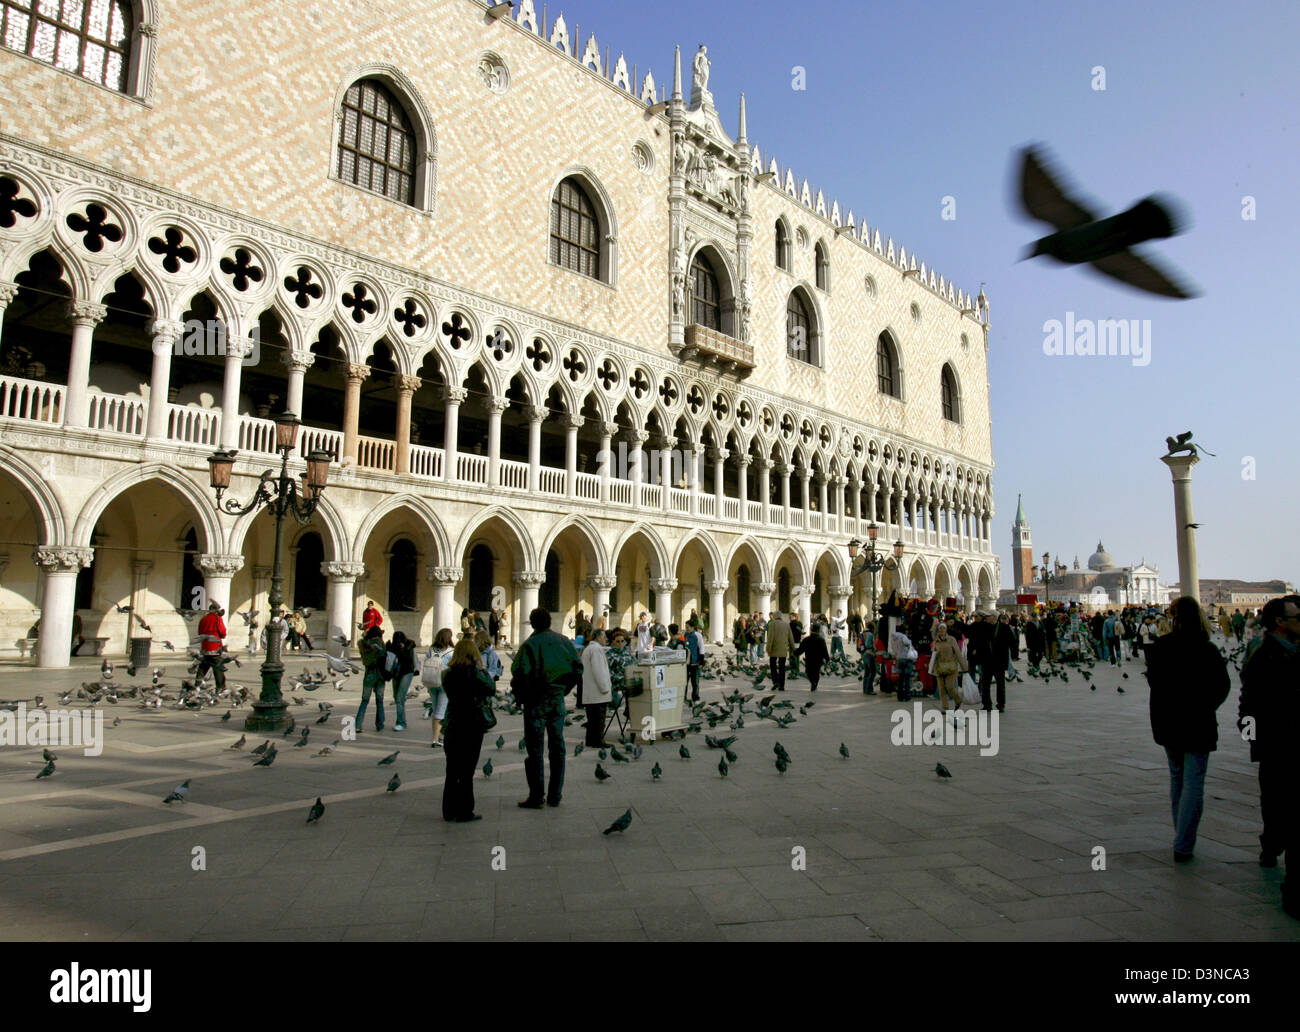 (Dpa) file - i turisti e piccioni folla in Piazza San Marco (Marcus Square) di fronte al palazzo del doge di Venezia, Italia, 17 marzo 2006. Dal 1987 la città e la laguna sono elencati come patrimonio mondiale dell'UNESCO. Foto: Matthias Schrader Foto Stock